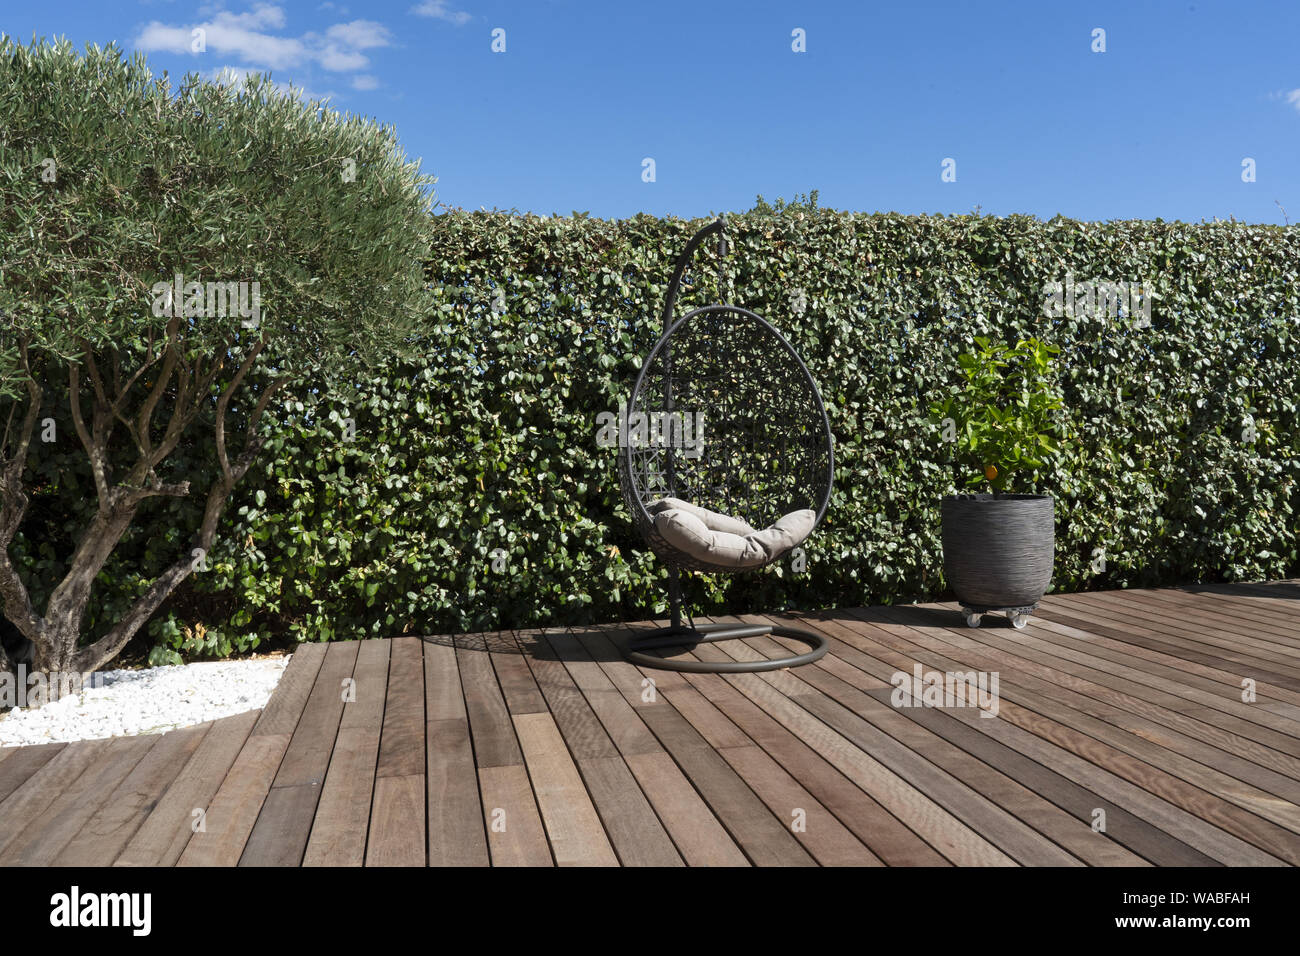 Un siège suspendu sur un sol en bois dans un jardin avec un olivier Banque D'Images